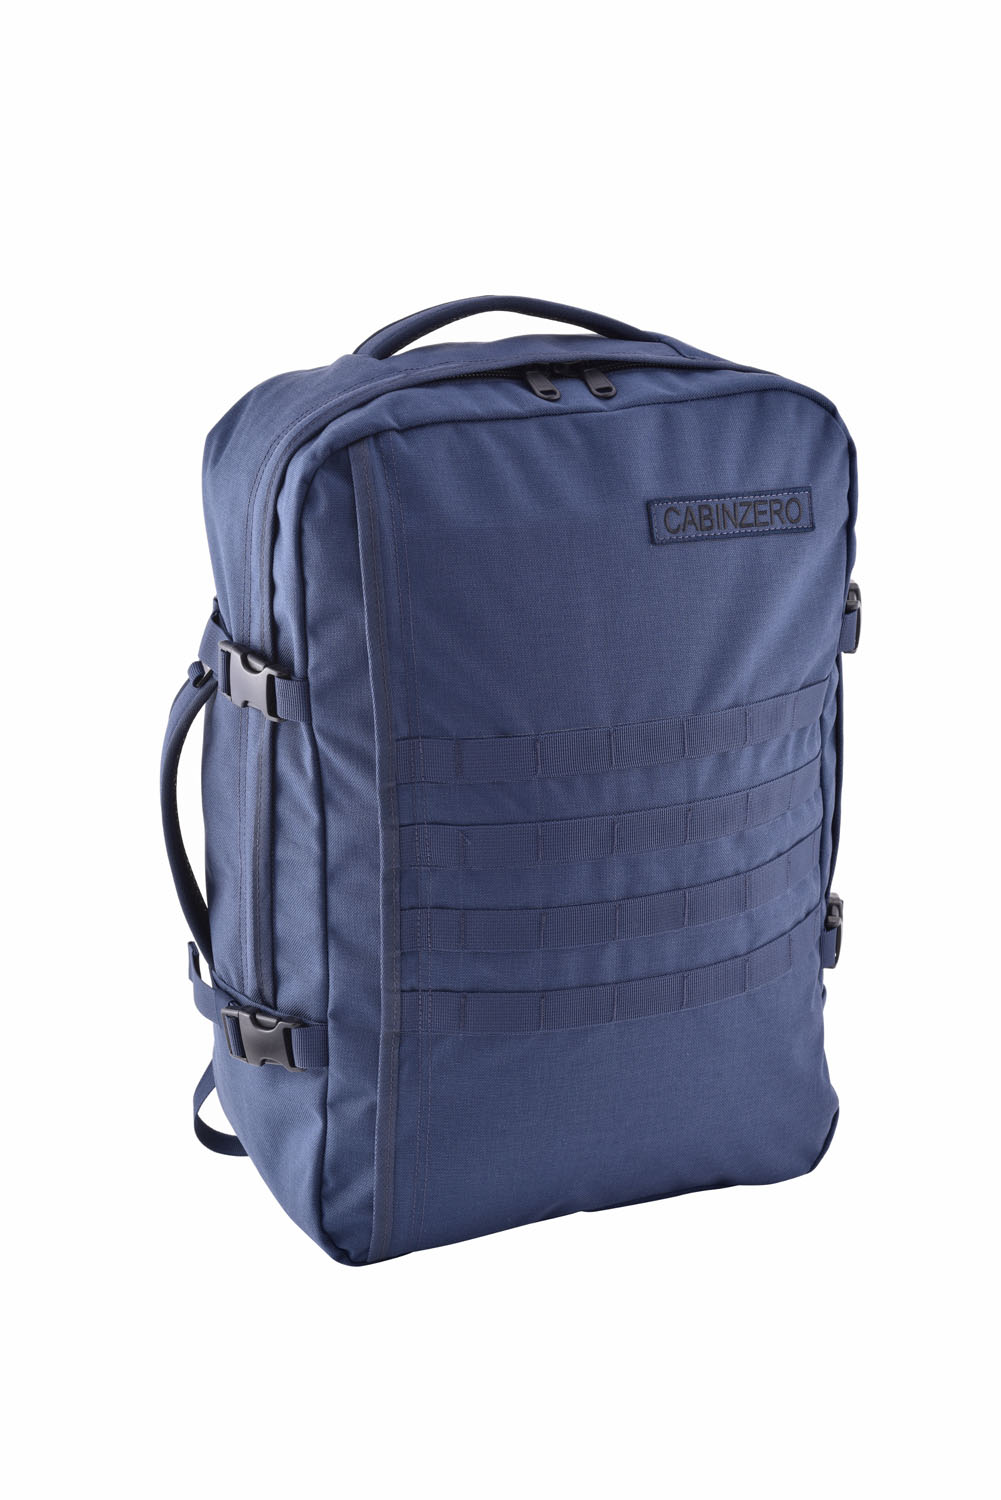 Cabin Zero Military Backpack 44L Navy | jetzt online kaufen auf Koffer.de ✓